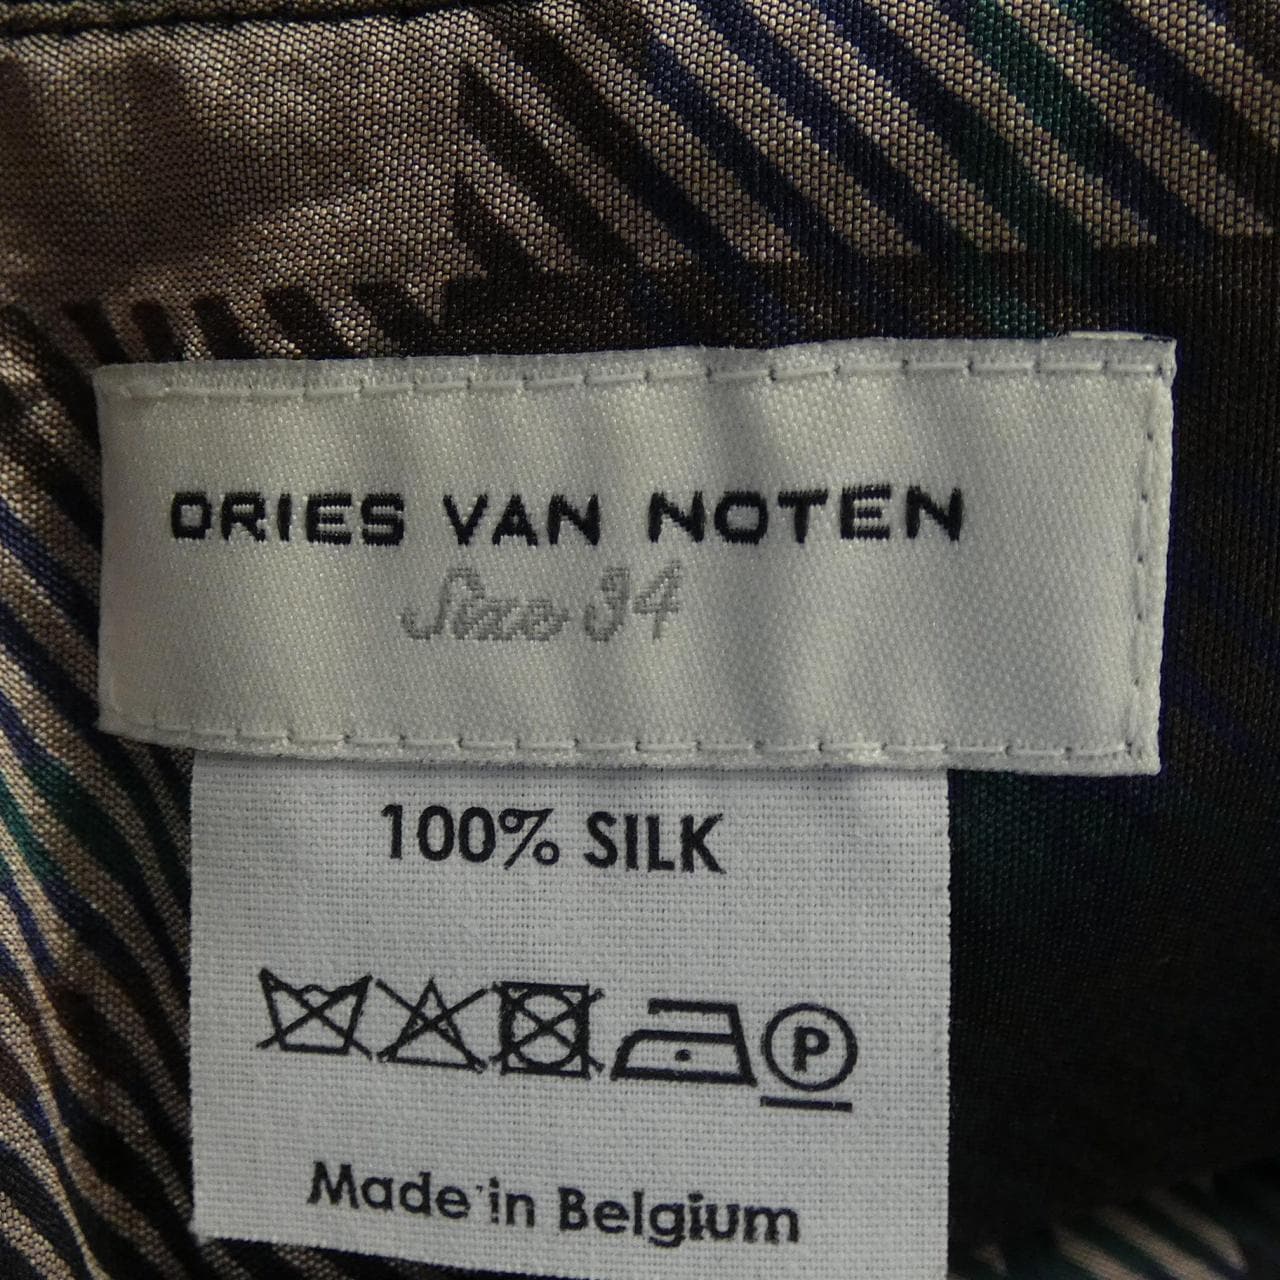 DRIES VAN NOTEN德賴斯·範諾頓 (Dries Van Noten) 半身裙